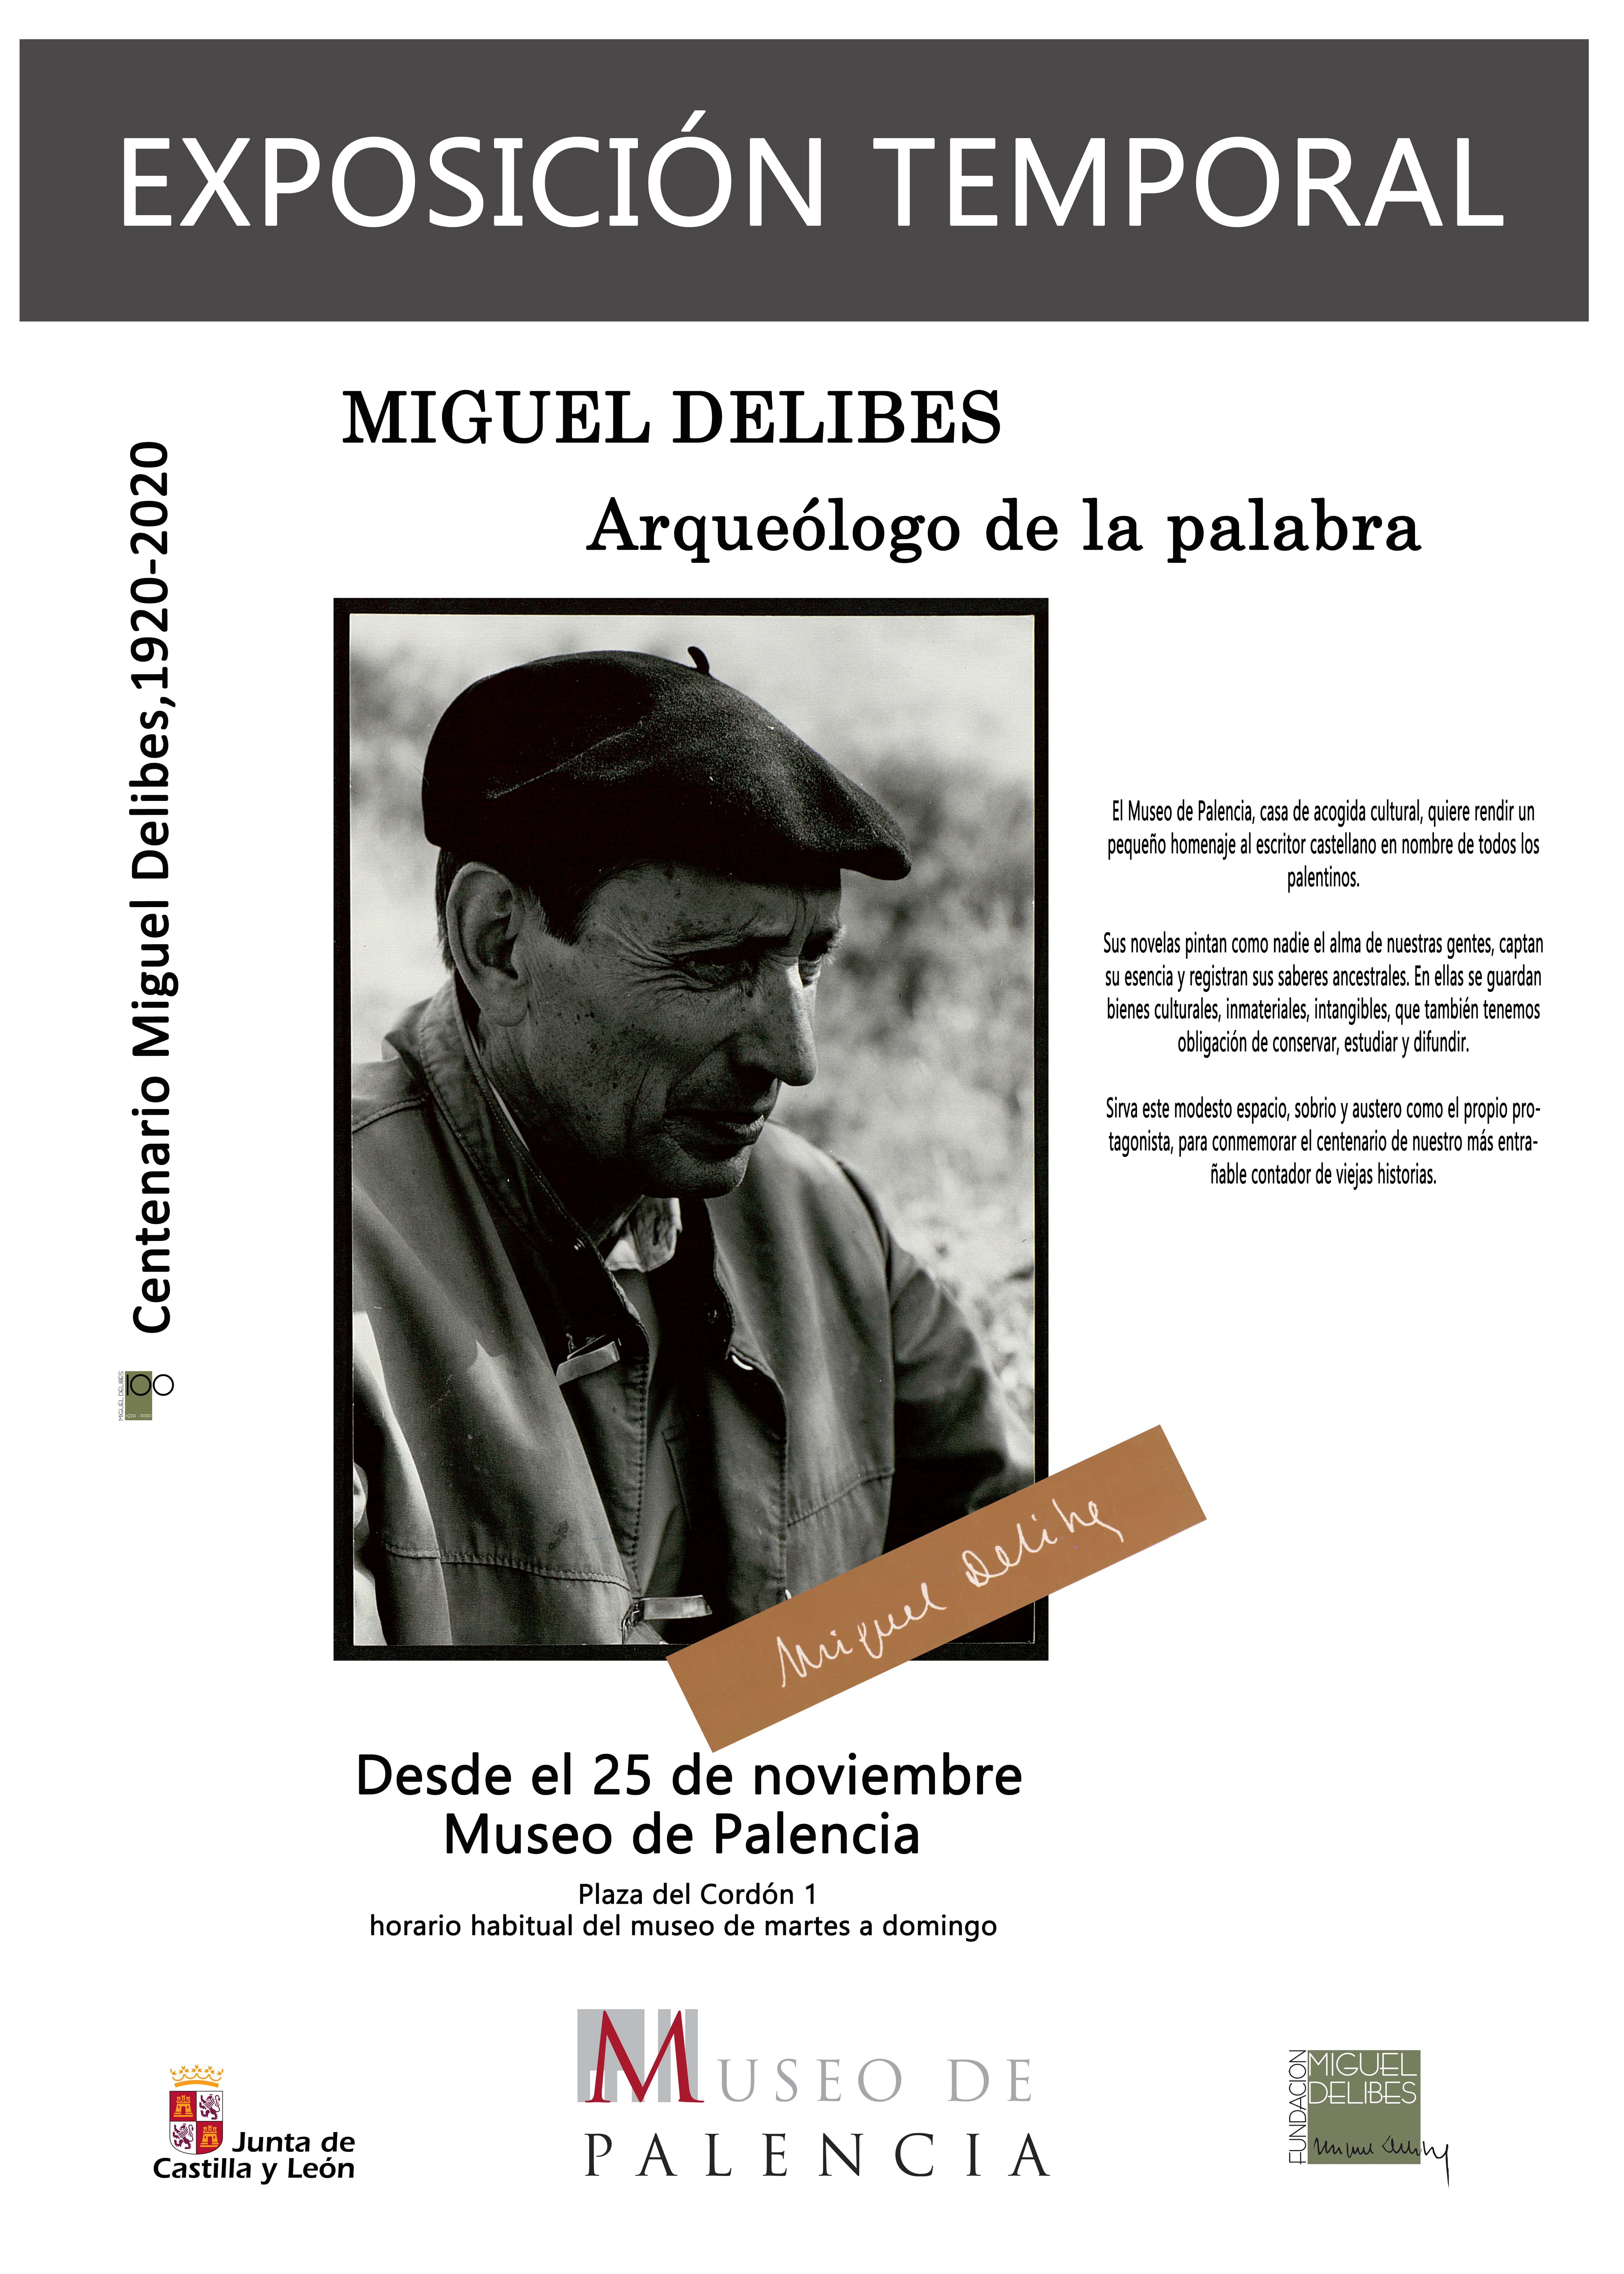 Exposición temporal «Miguel Delibes arqueólogo de la palabra» en el Museo de Palencia